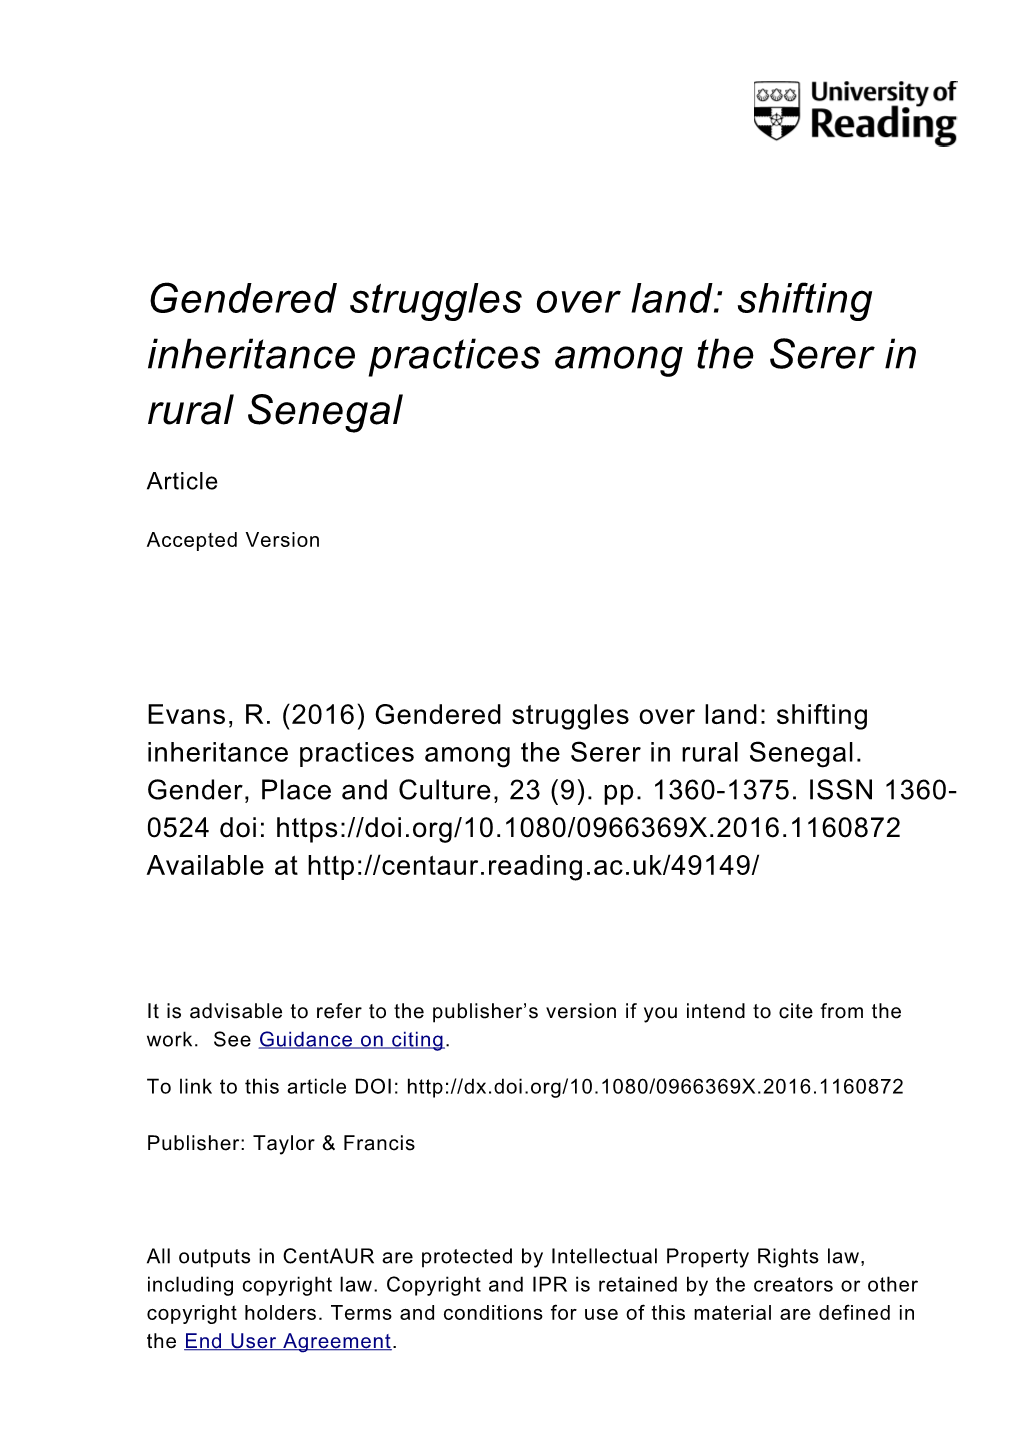 Gendered Struggles Over Land: Shifting Inheritance Practices Among the Serer in Rural Senegal